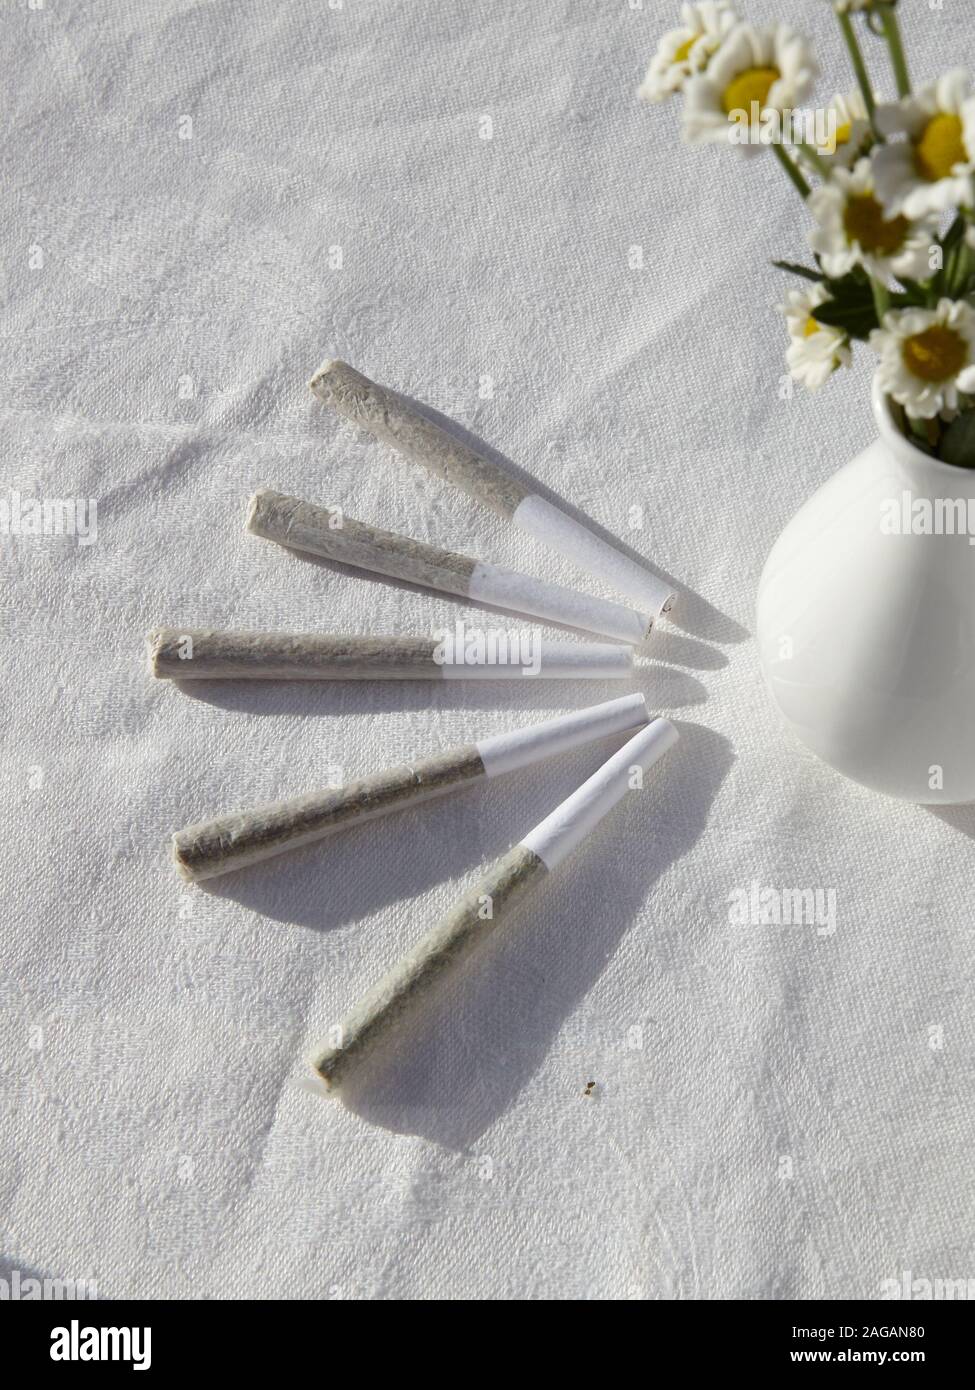 Vertikale High-Angle-Aufnahme von Marihuana-Blunts und einer Vase Von Kamillen auf einer weißen Oberfläche Stockfoto